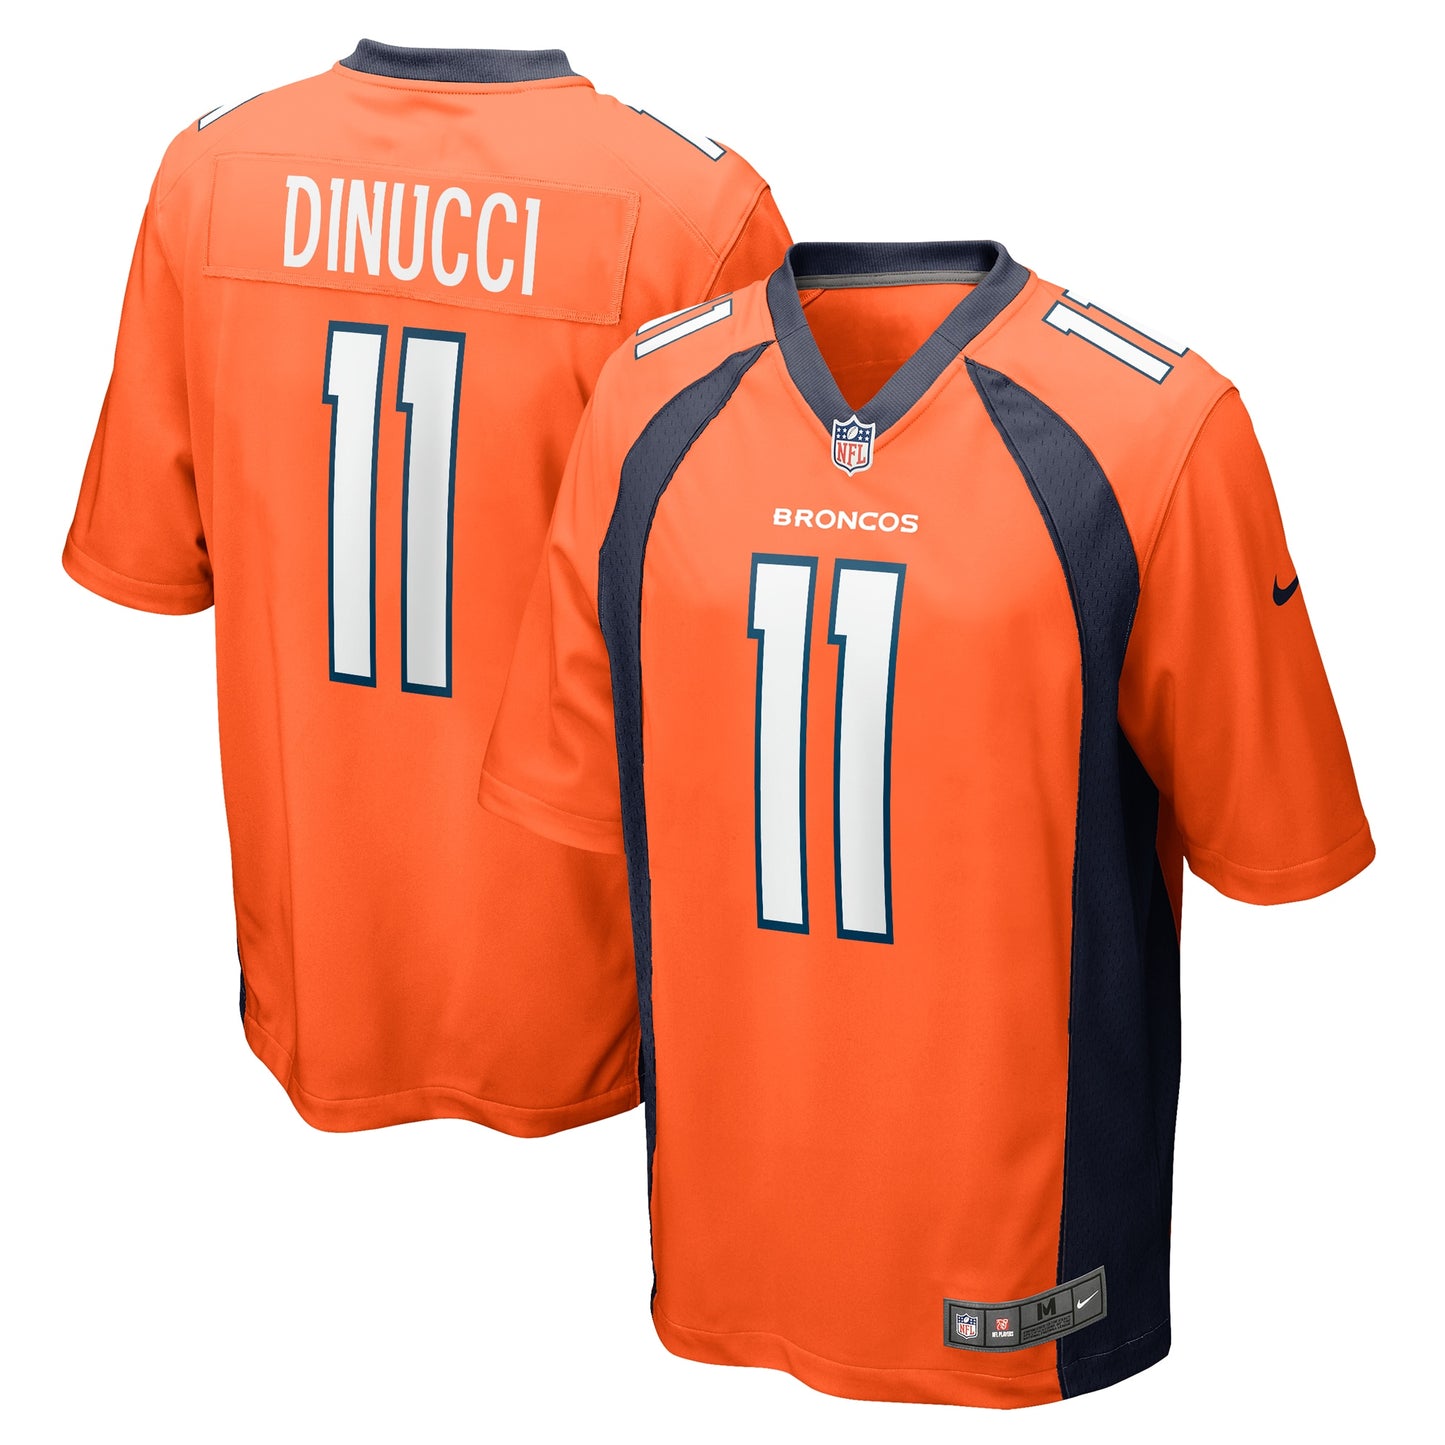 Ben DiNucci Denver Broncos Nike Team Game Jersey - Orange